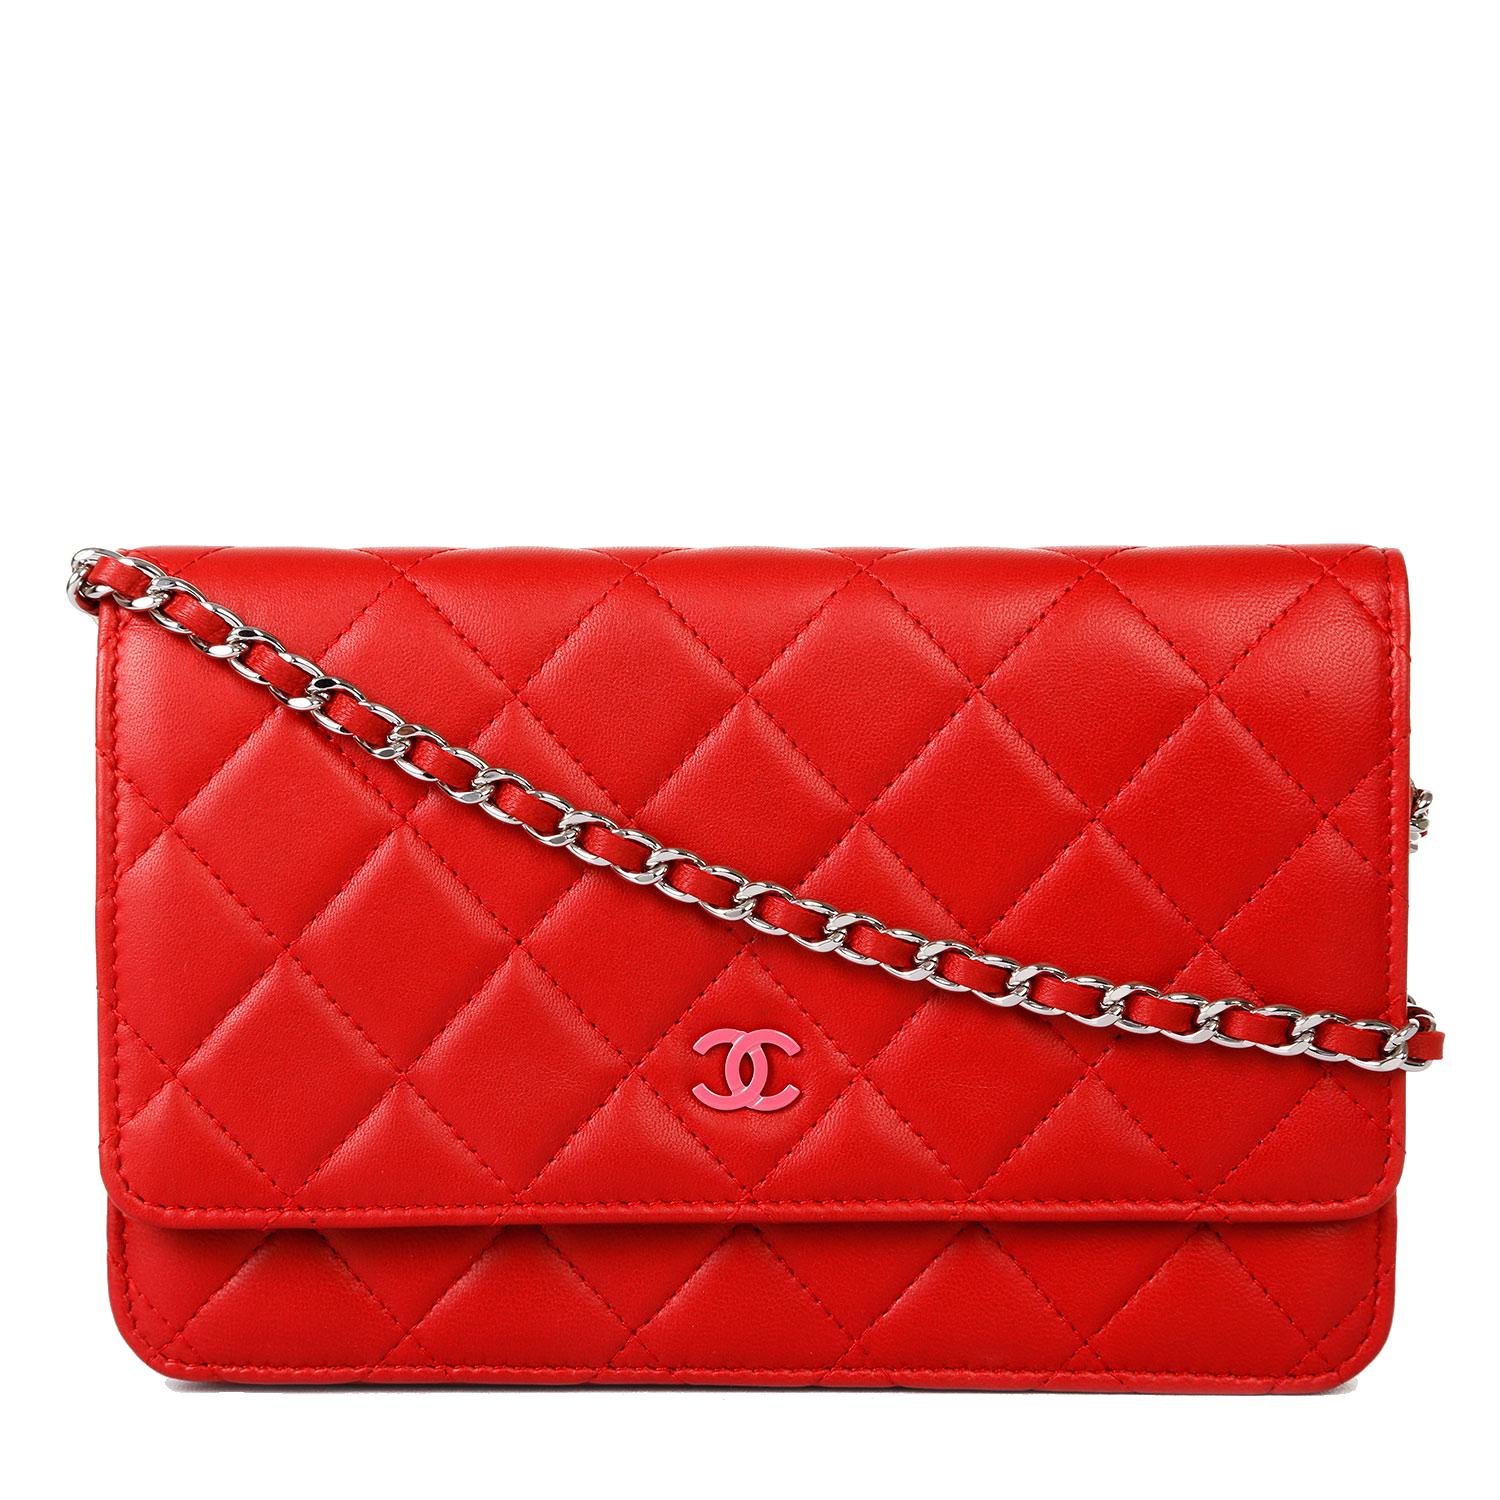 Chanel Bag PNG Transparent Images Free Download